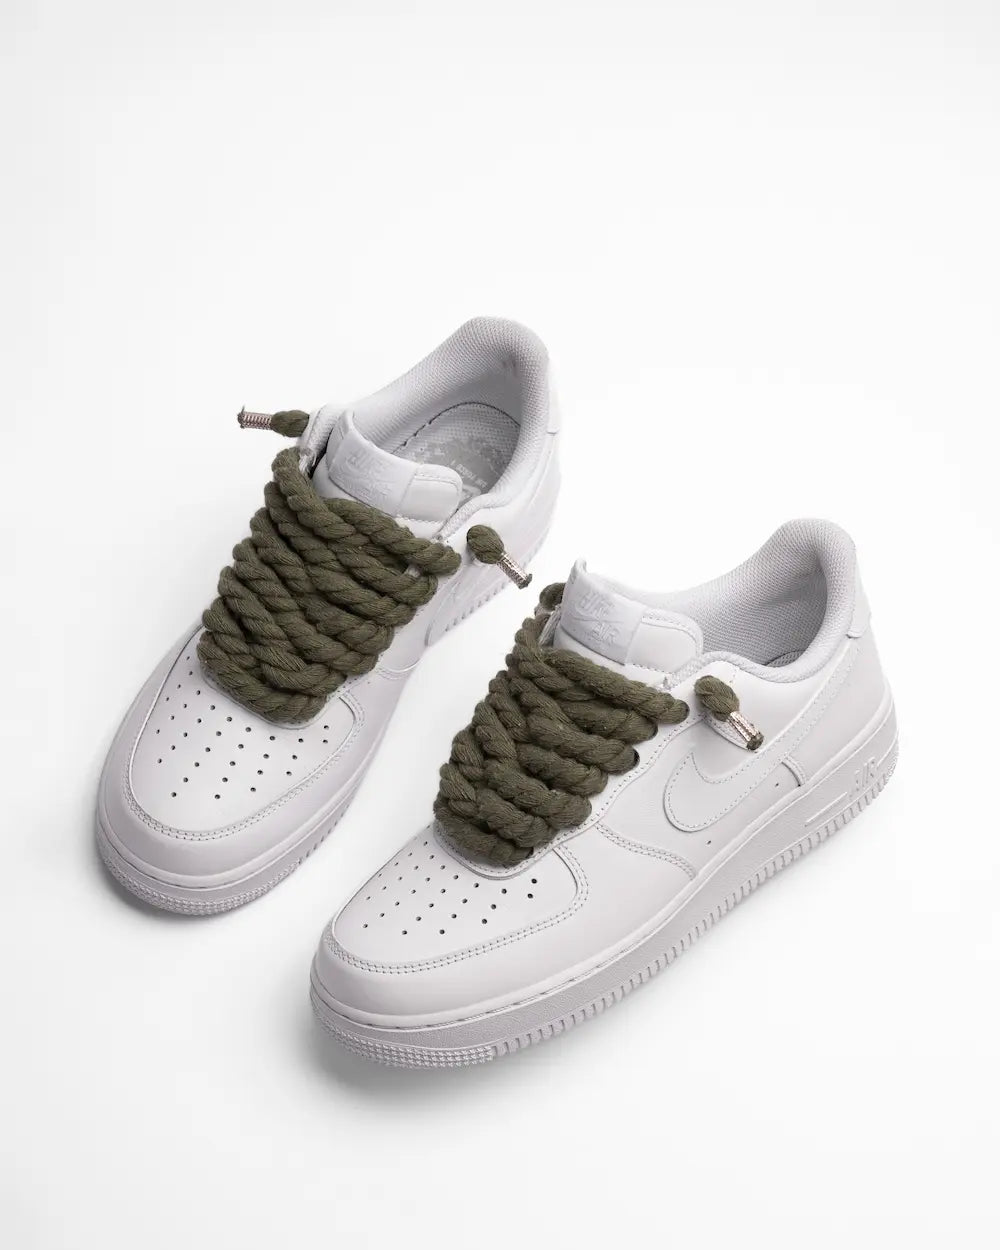 Nike Air Force 1 bianca personalizzata con lacci in corda verde scuro